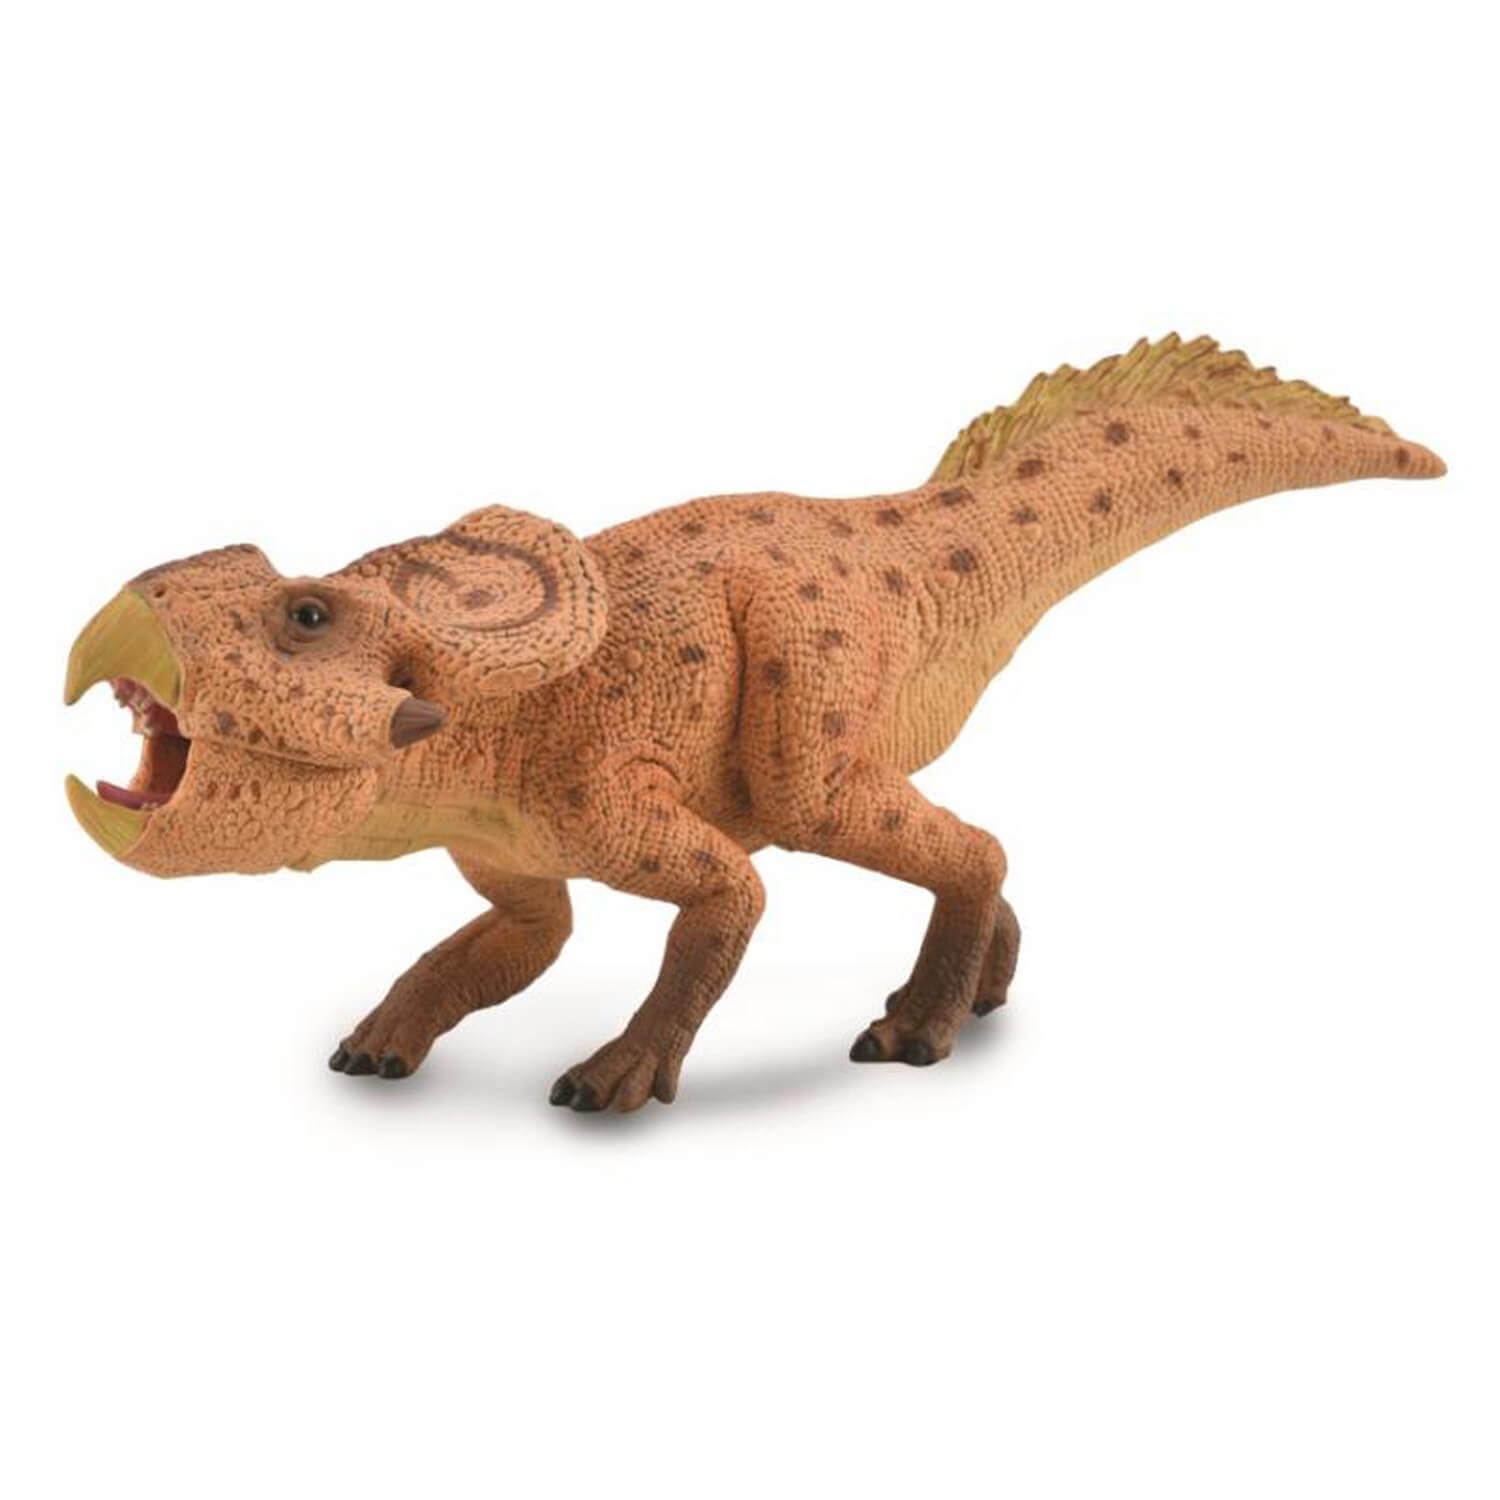 figurineâ prã©histoire deluxe : protoceratops avec machoire amovible